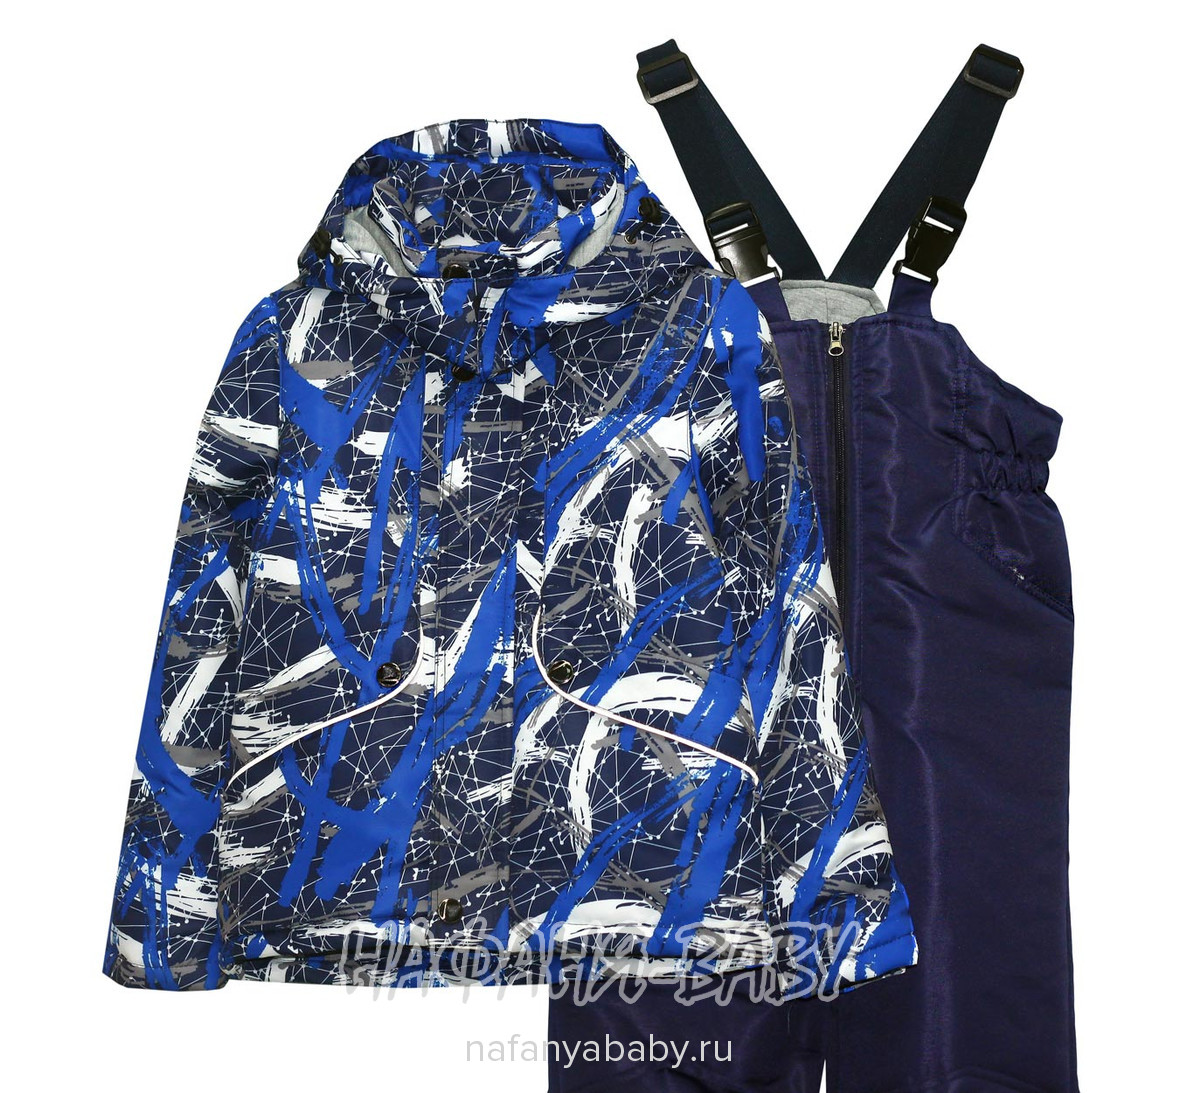 Детский костюм RISINGSUNSOAV арт: 7708, 10-15 лет, 5-9 лет, цвет куртка с синим рисунком, полукомбинезон темно-синий, оптом Китай (Пекин)